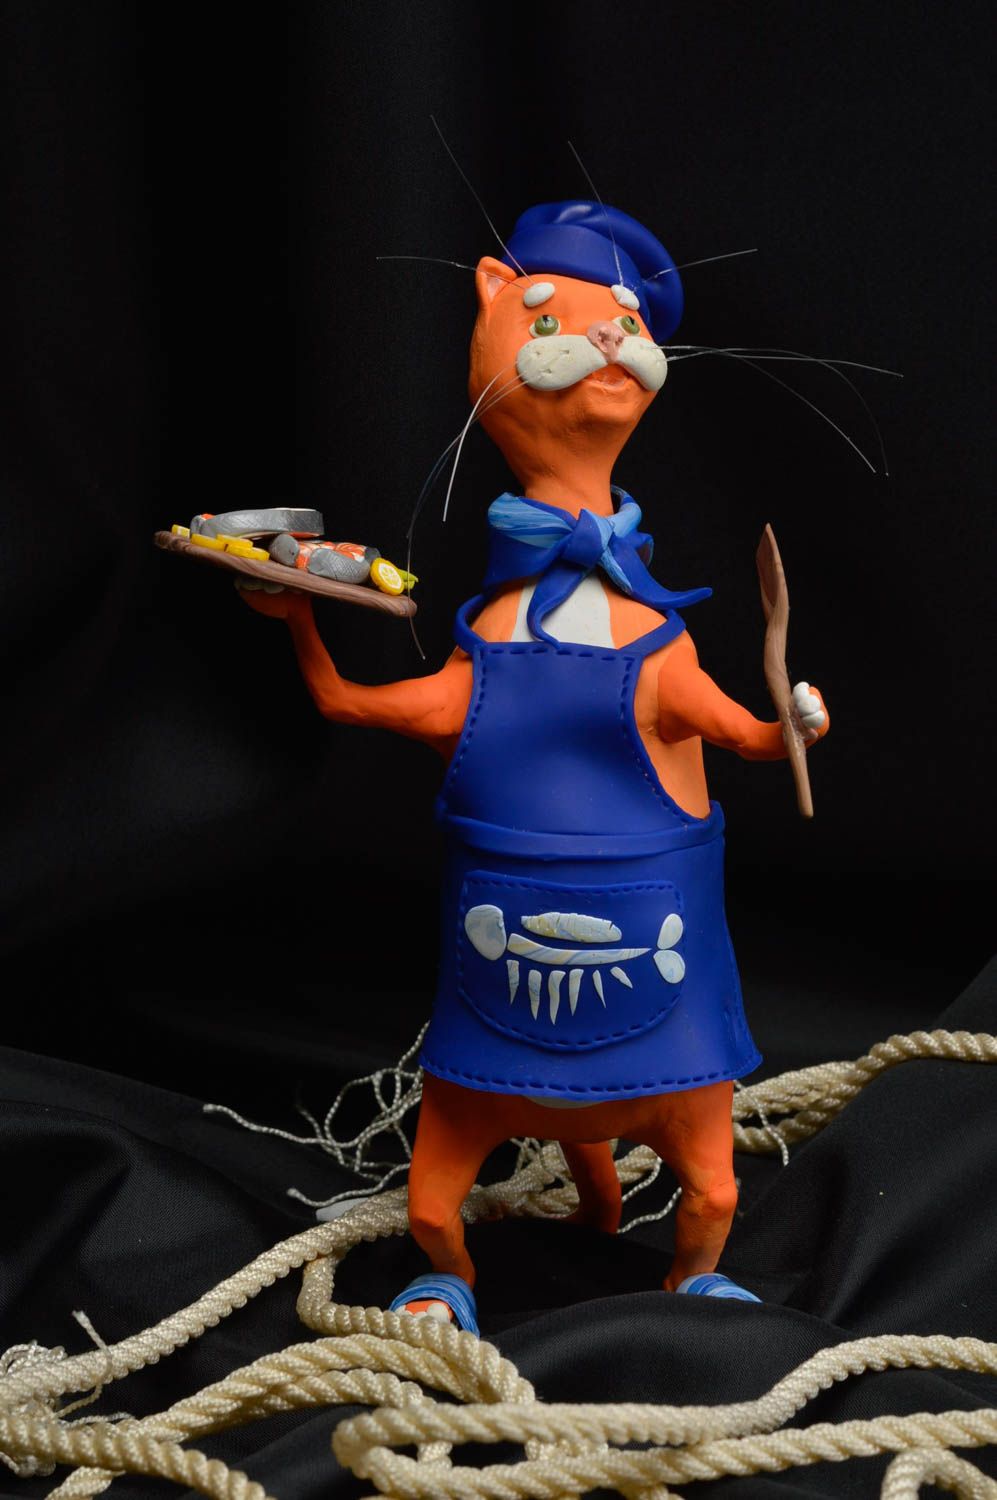 Handmade colorful statuette ceramic cat figurine unusual cute souvenirs photo 1